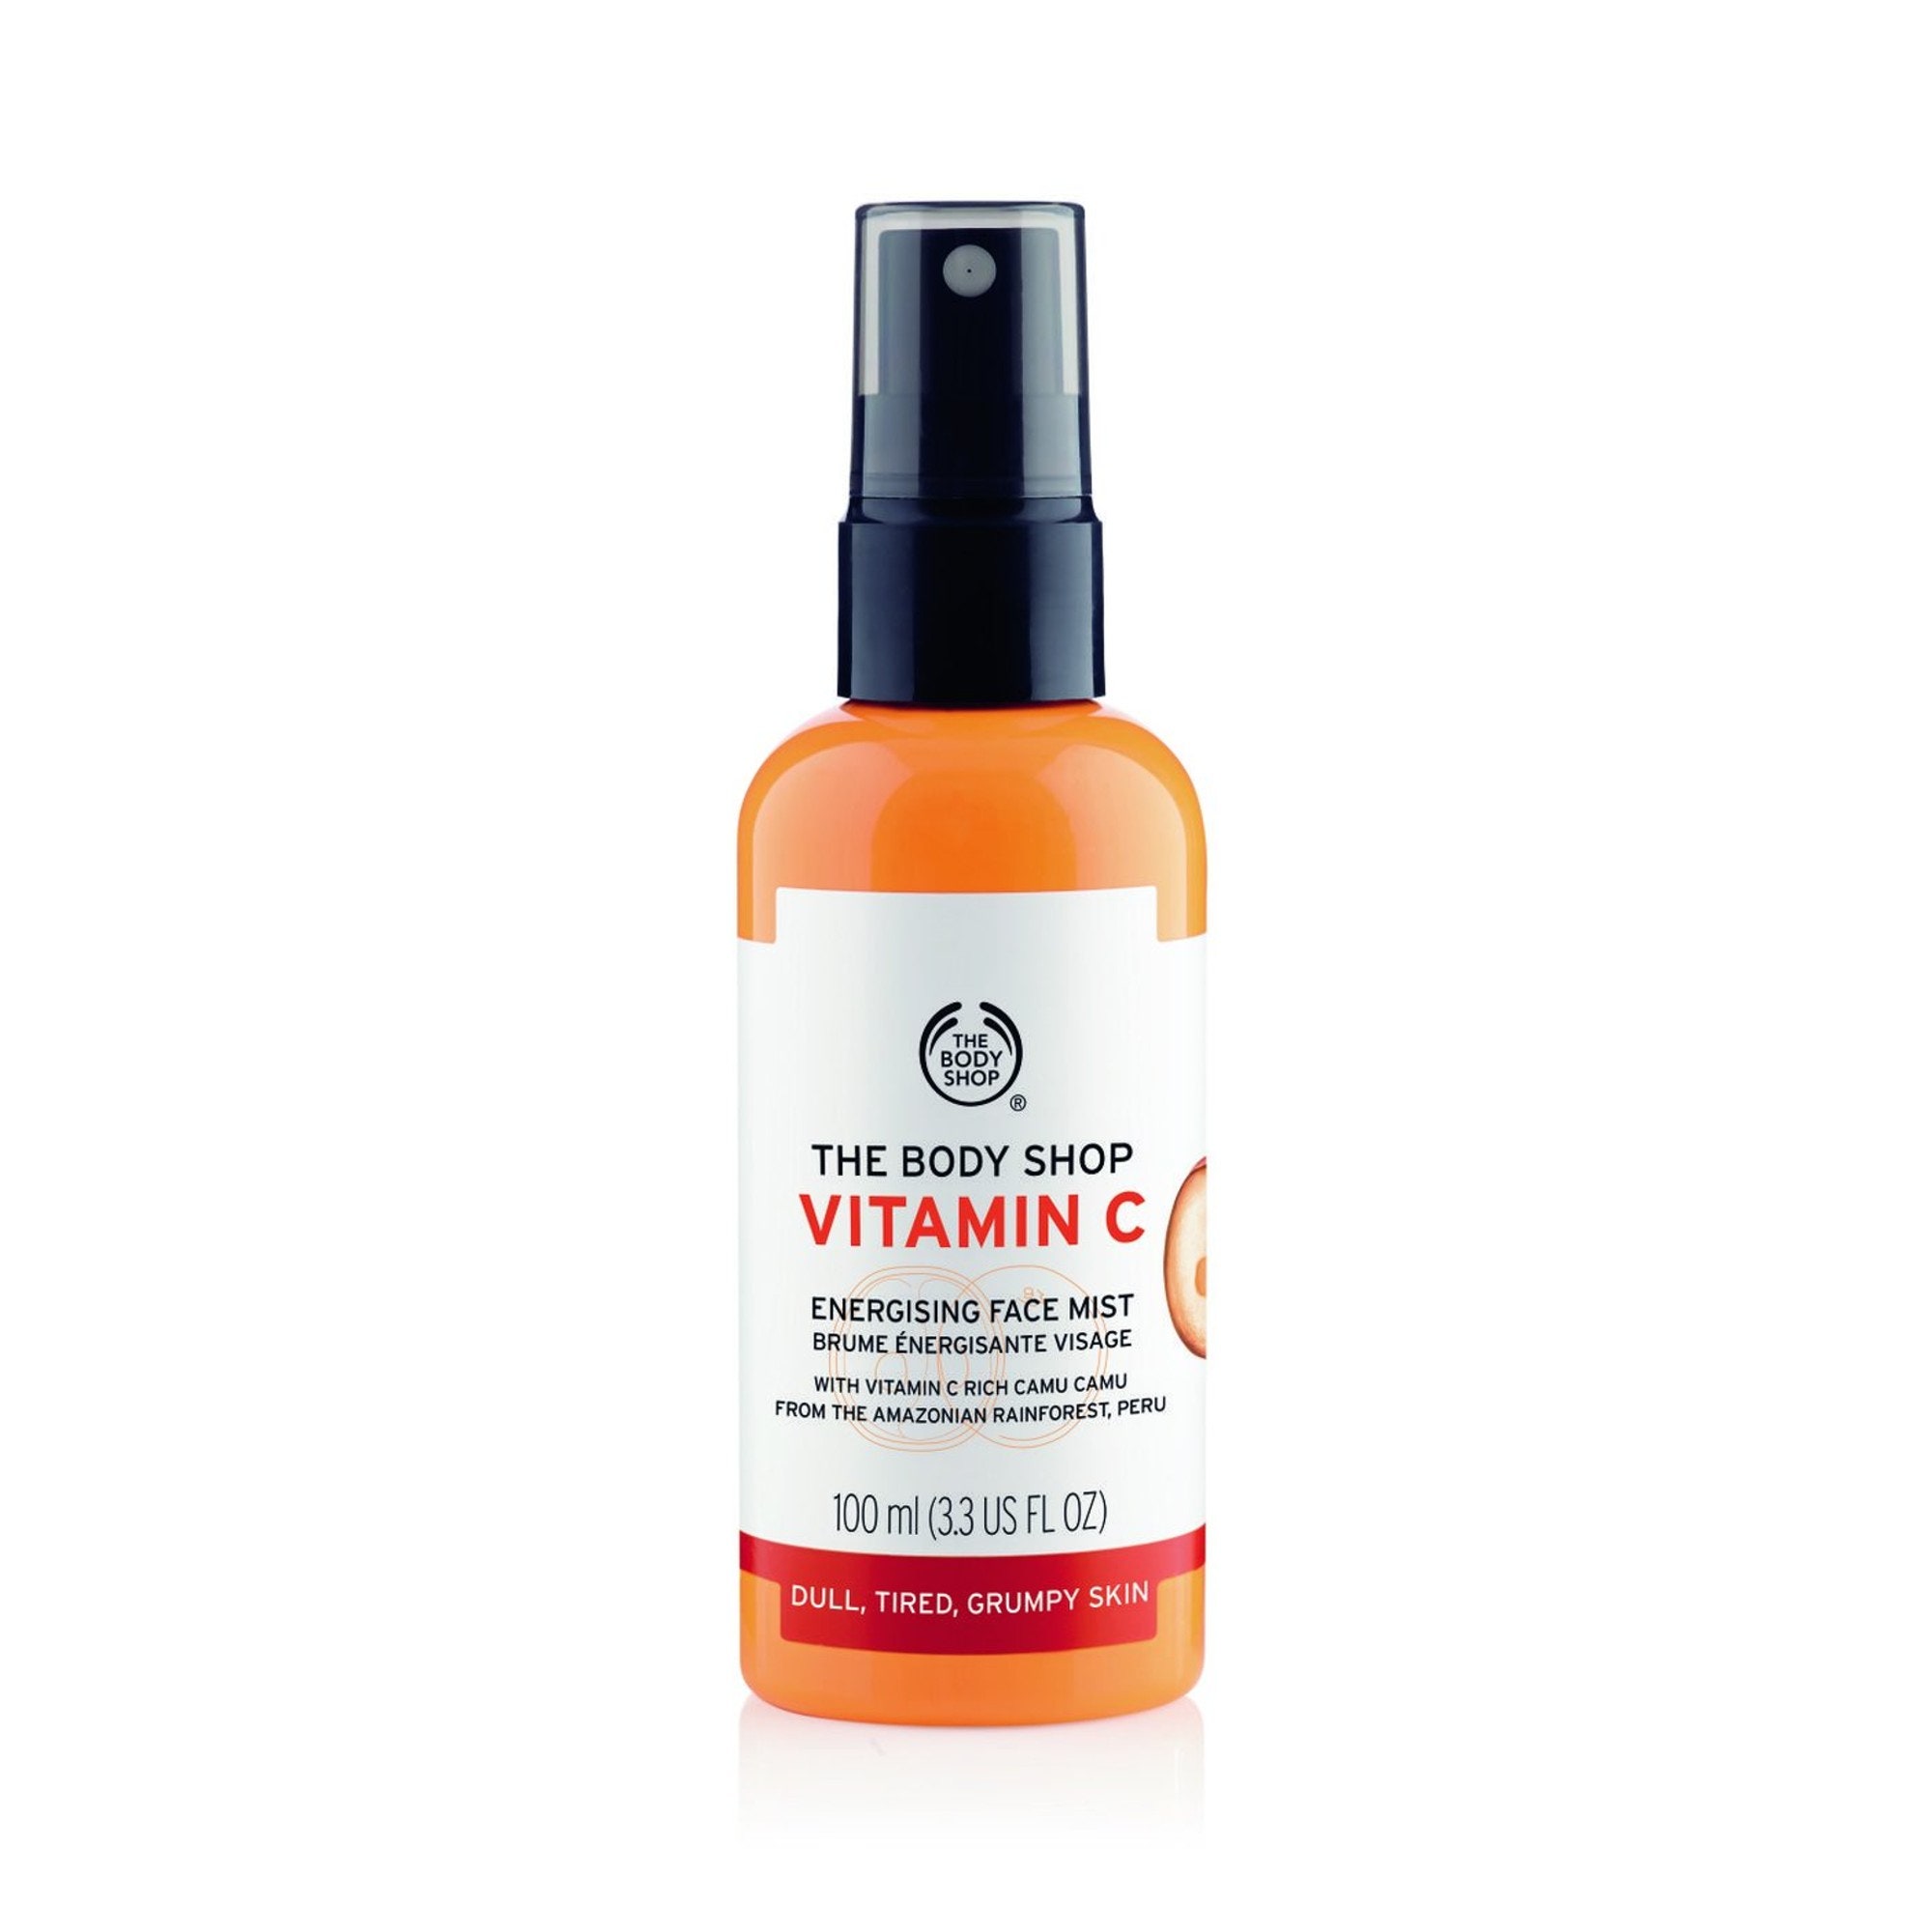 10 sueros de vitamina c ideales para rejuvenecer y revitalizar la piel